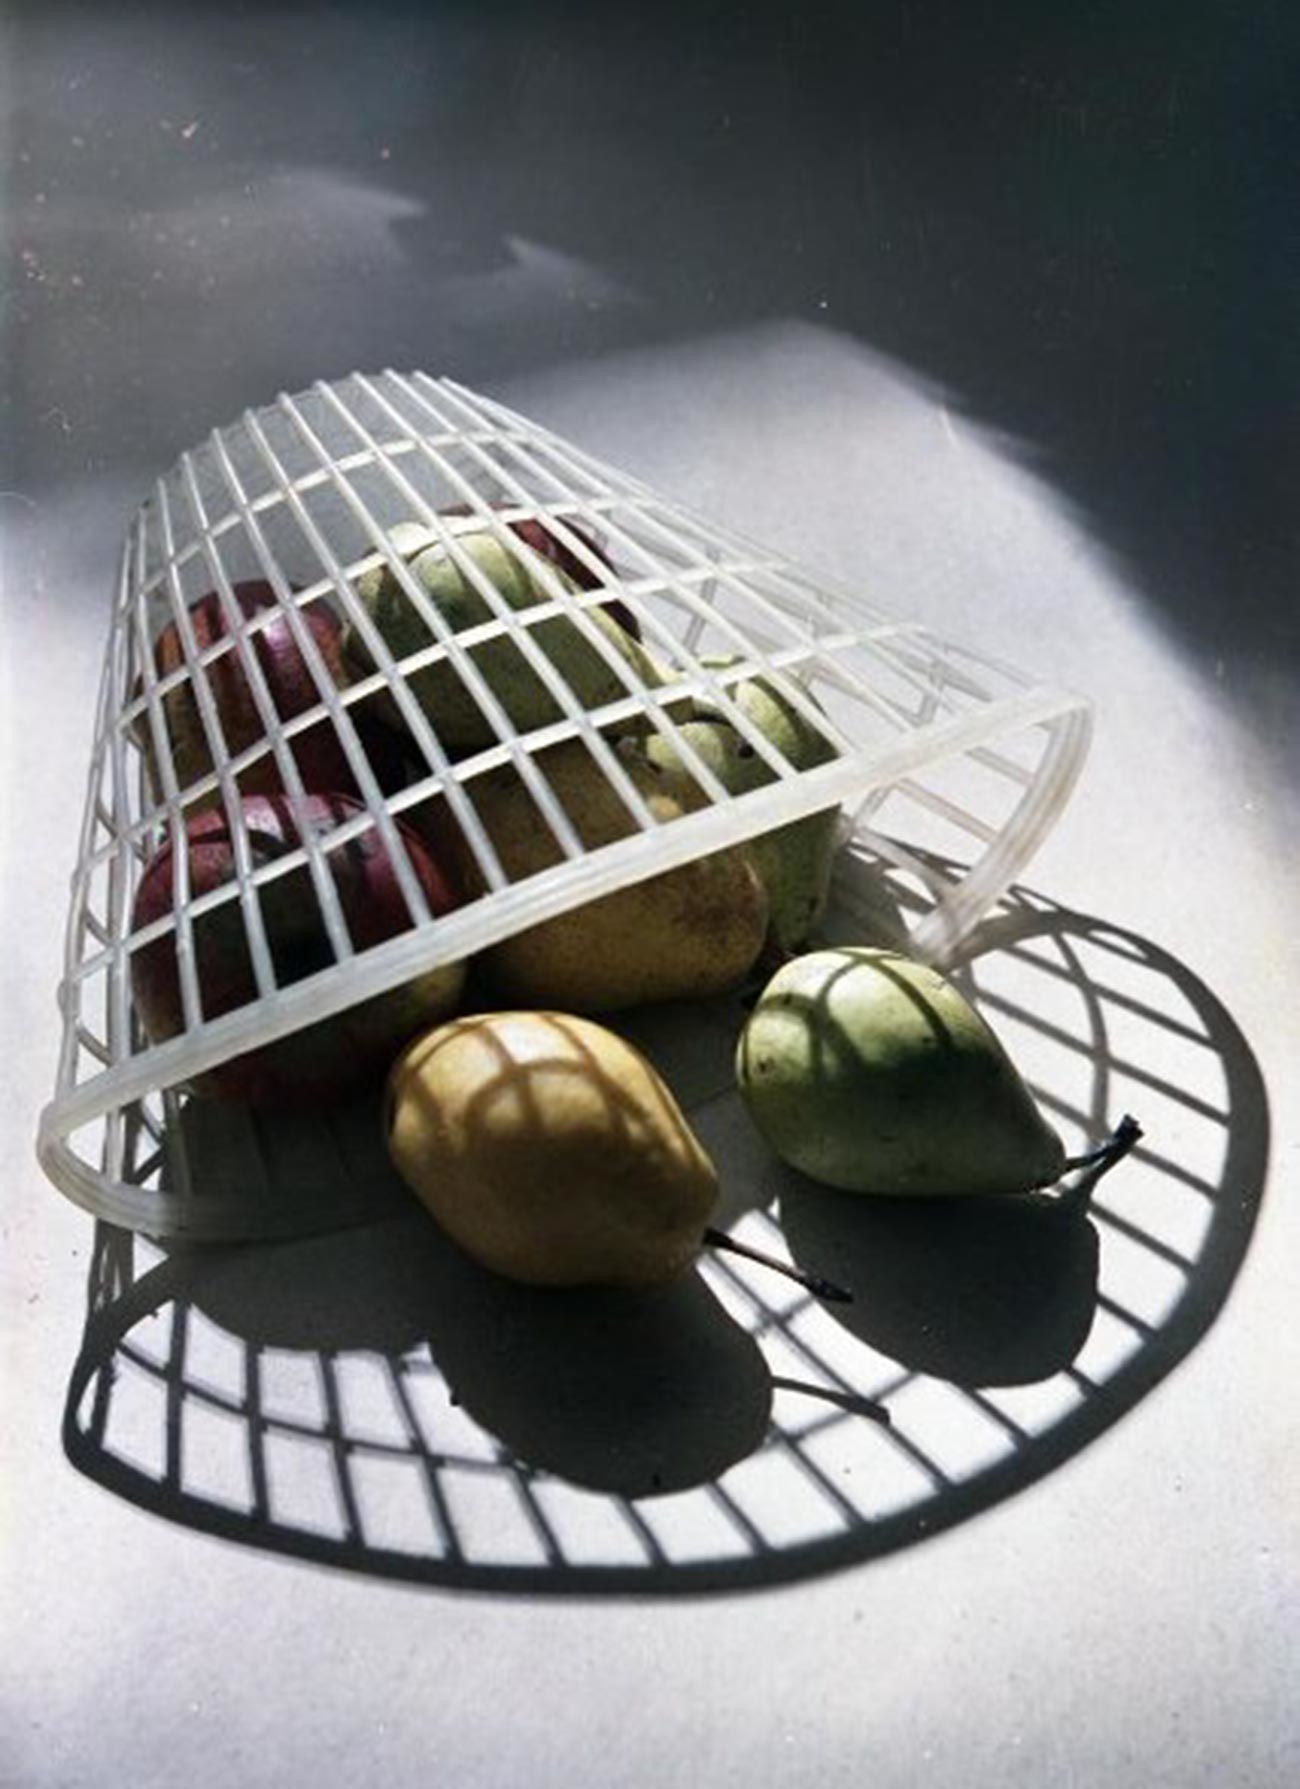 Esta merecería ser presentada en una exposición fotográfica. 'Peras en una cesta de plástico' (1950).